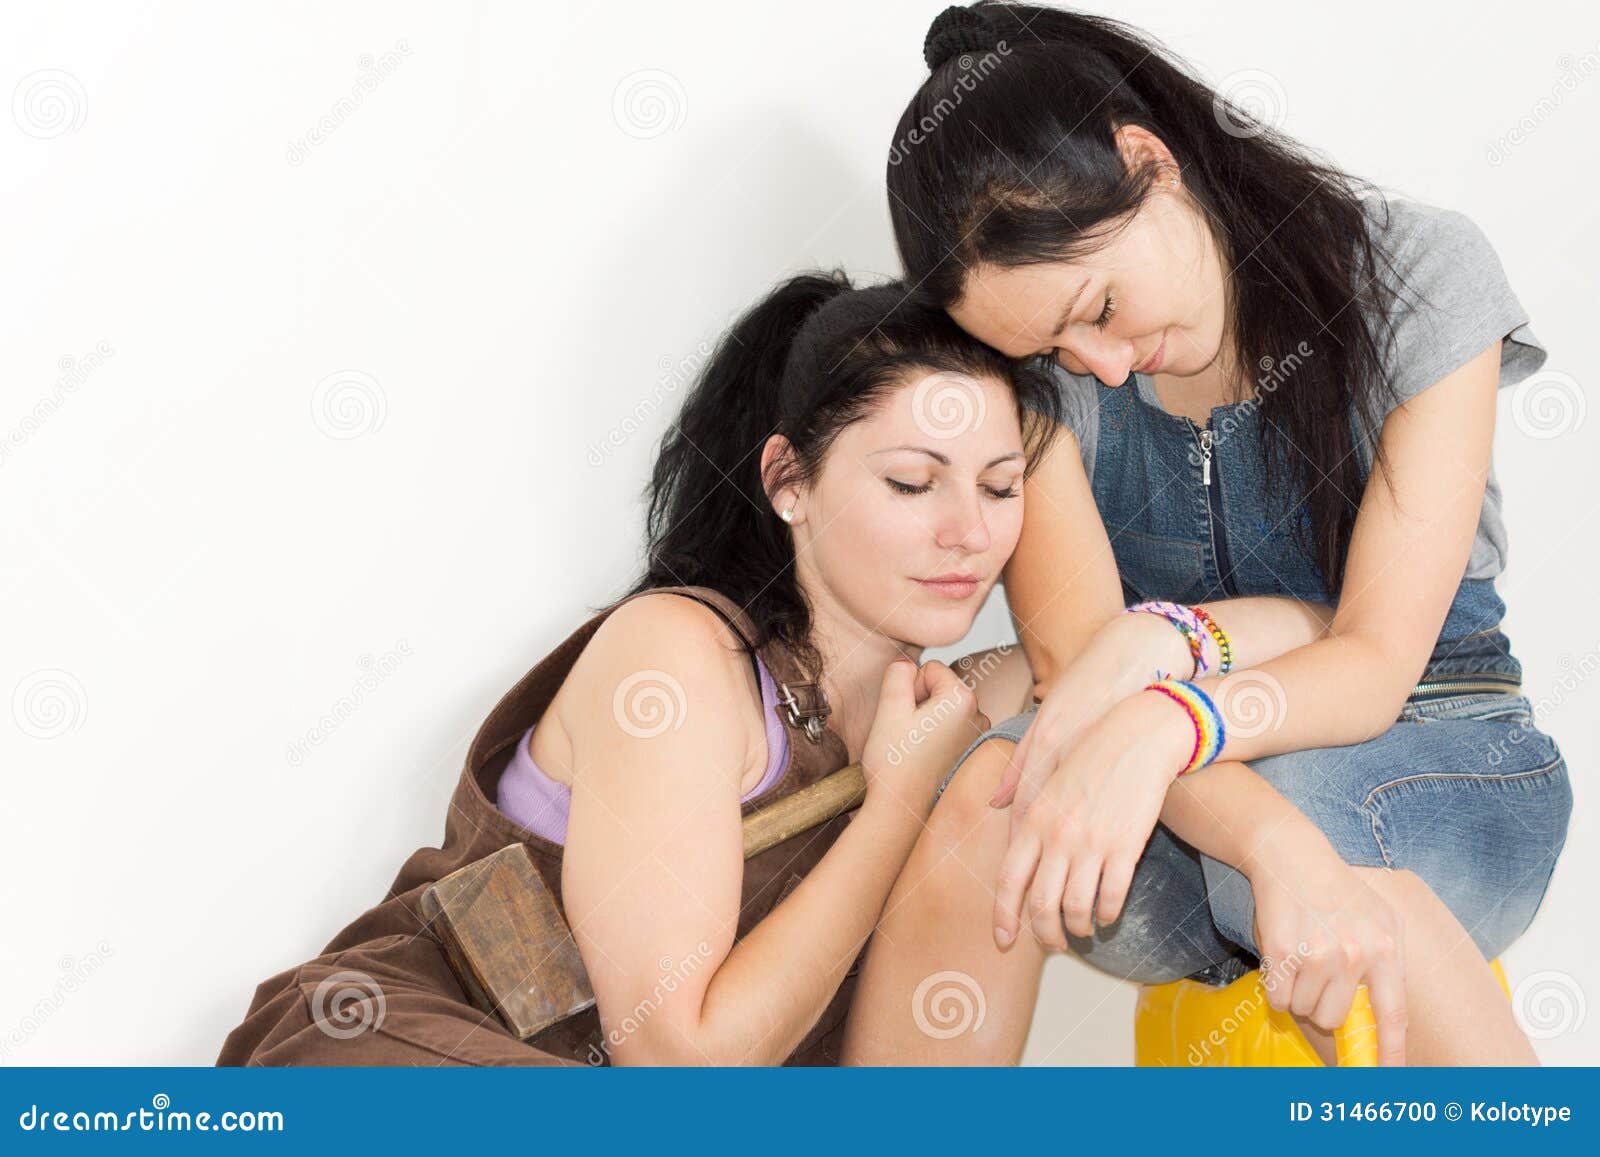 Две девушки ласкают свои киски